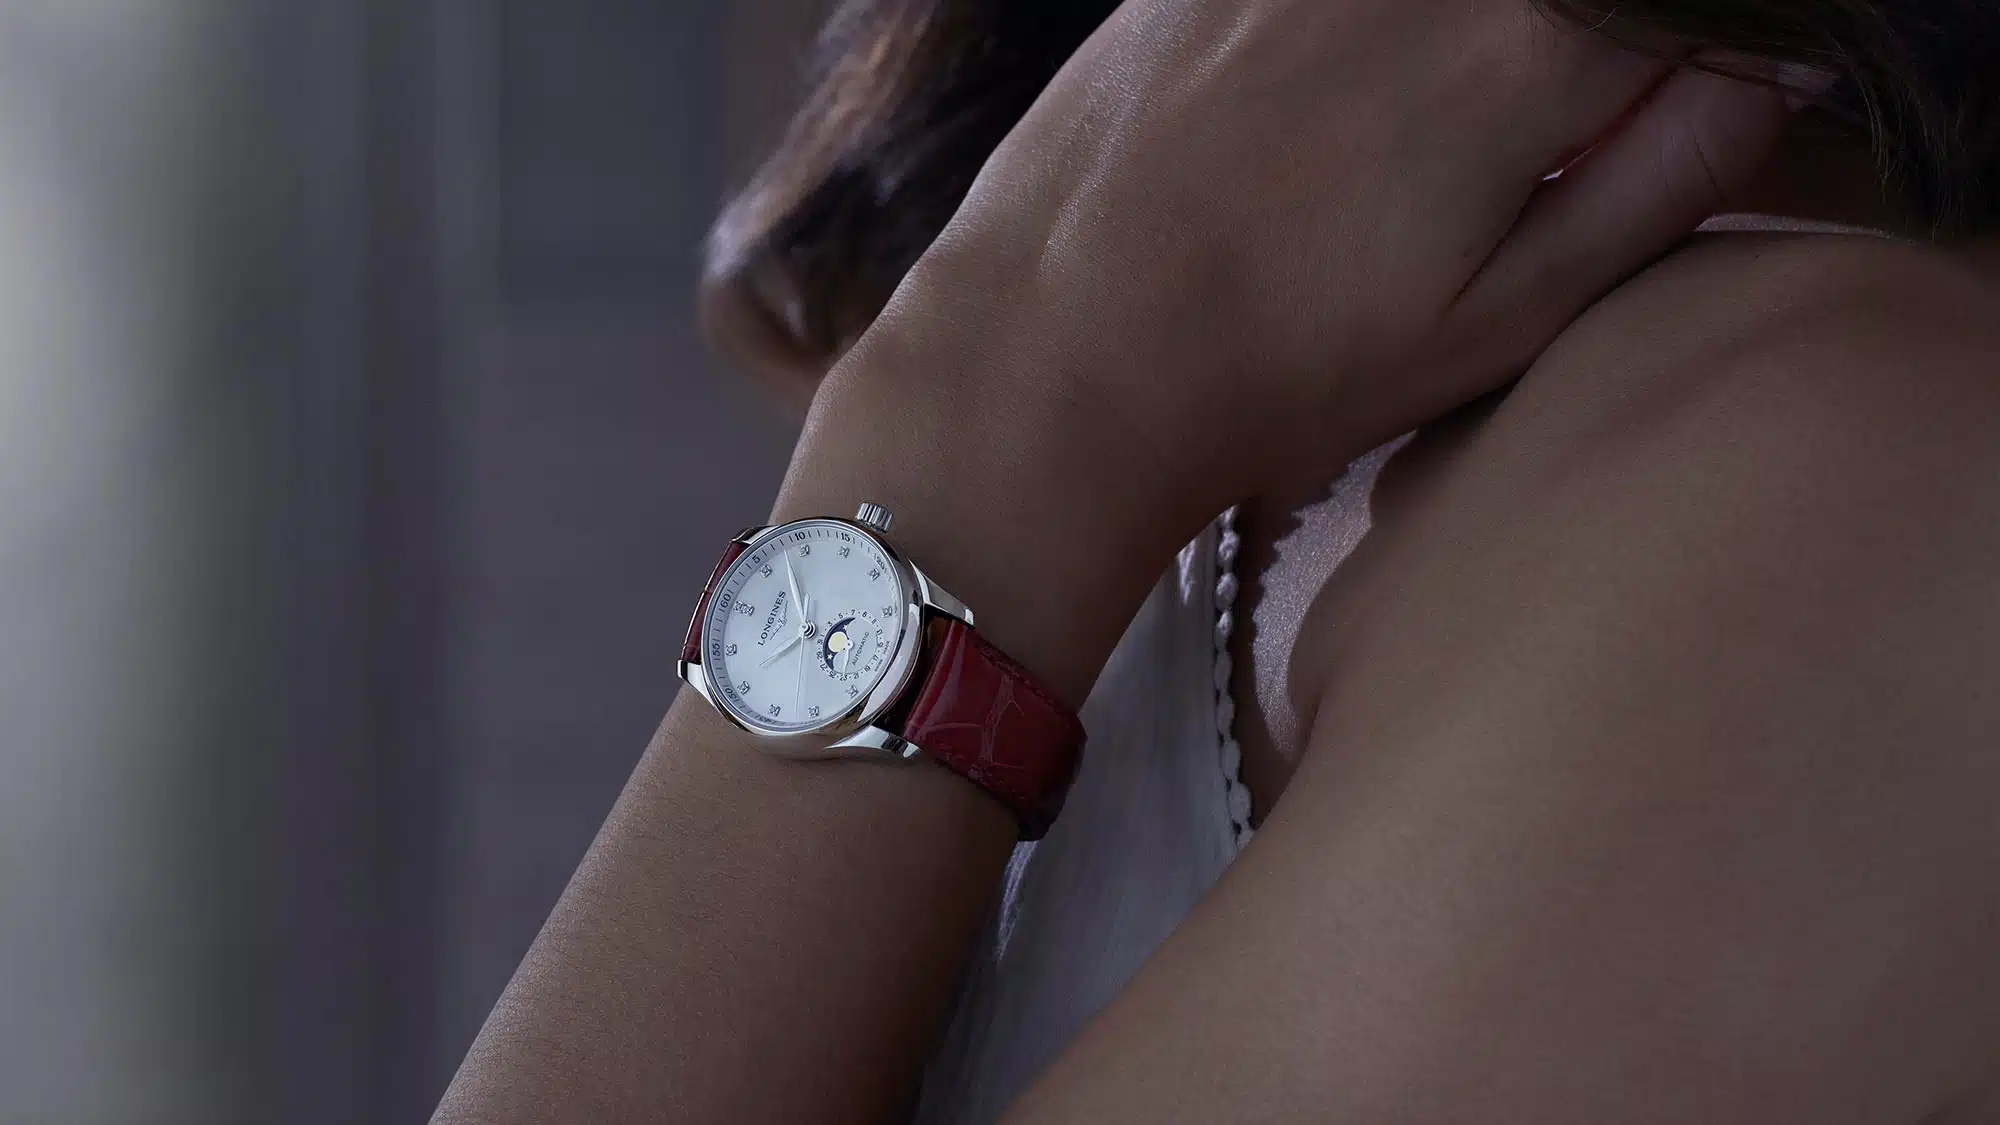 Longines - orologi donna - Gioielleria Casavola di Noci - immagine promozionale